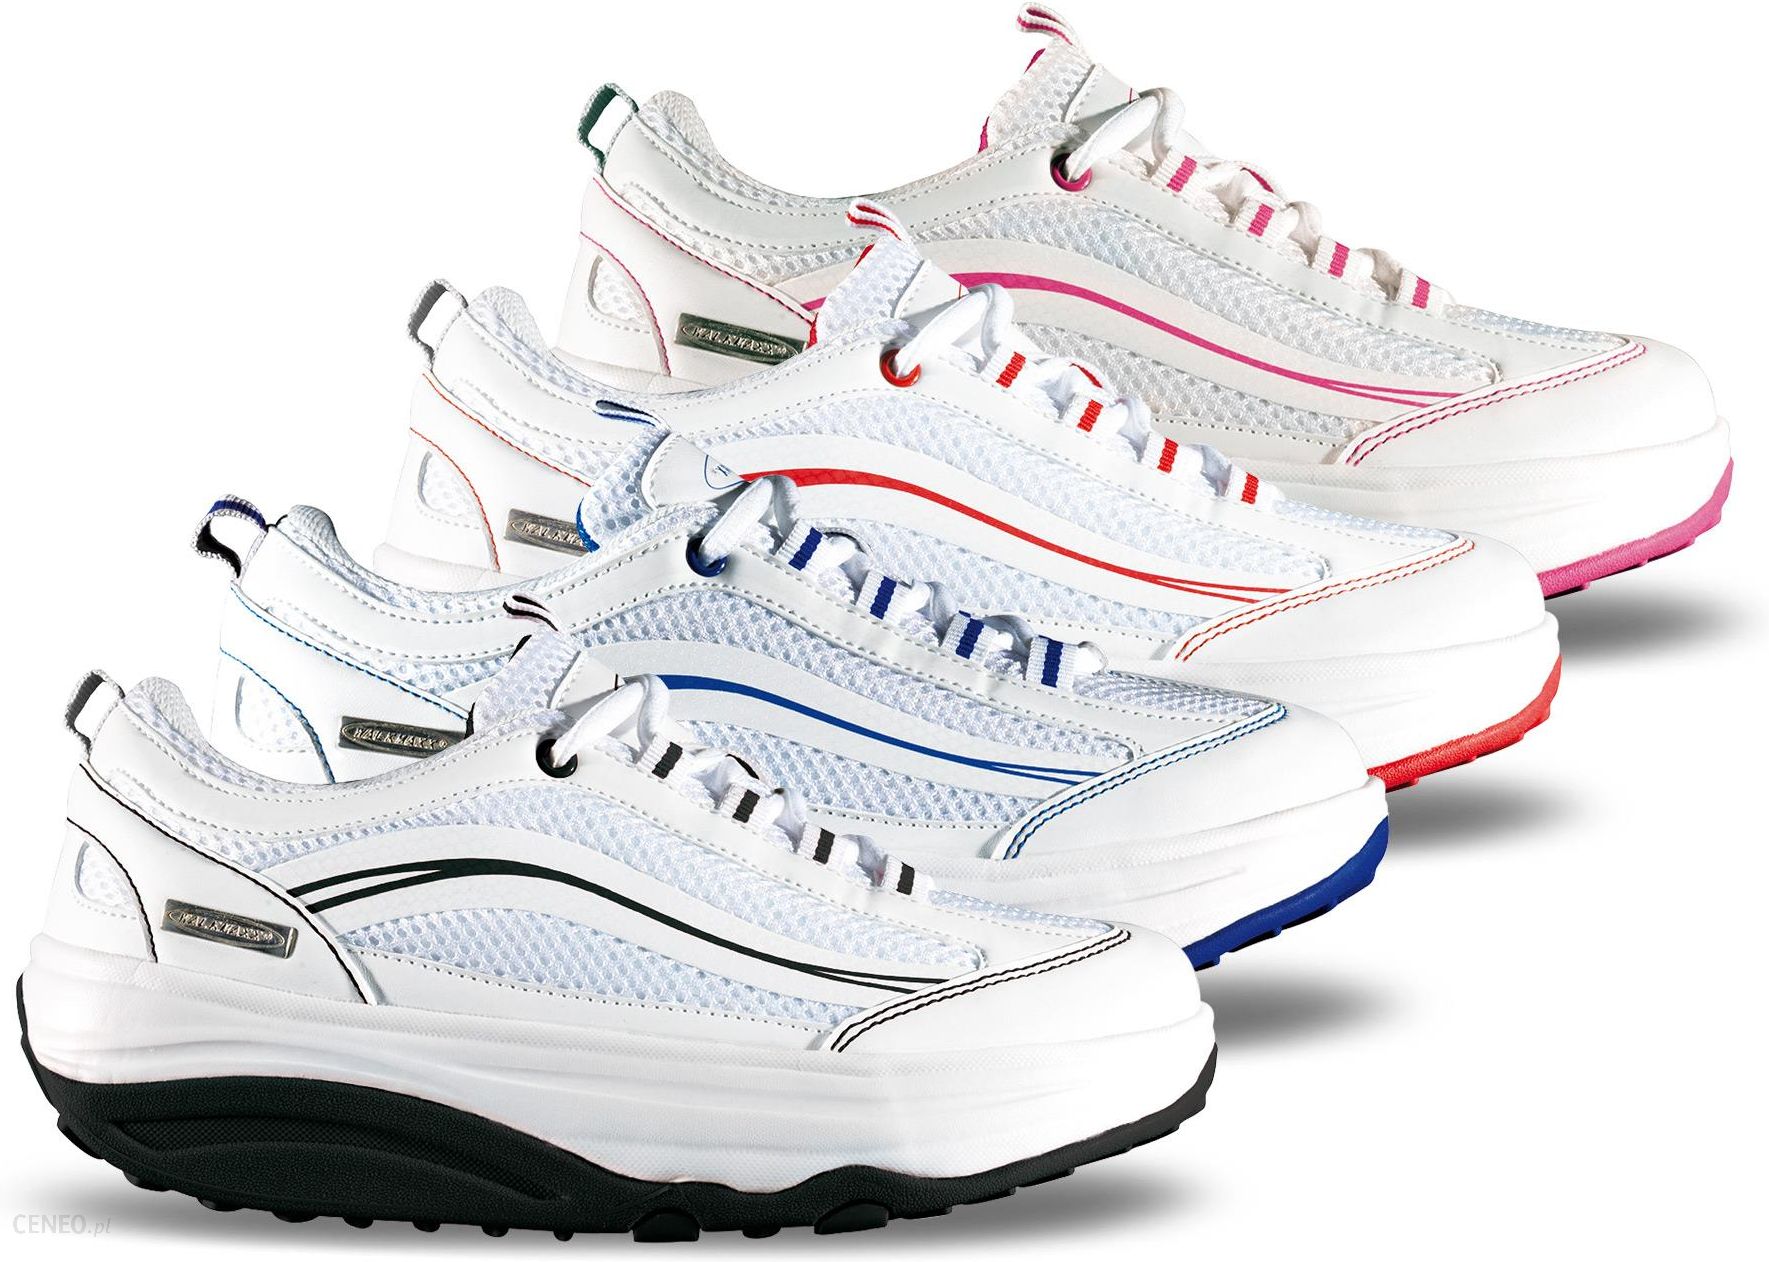 Кроссовки интернет доставка. Кроссовки Walkmaxx Running Shoes. Кроссовки Walkmaxx вокмакс. Кроссовки Walkmaxx p. Patent. Walkmaxx 106054227.